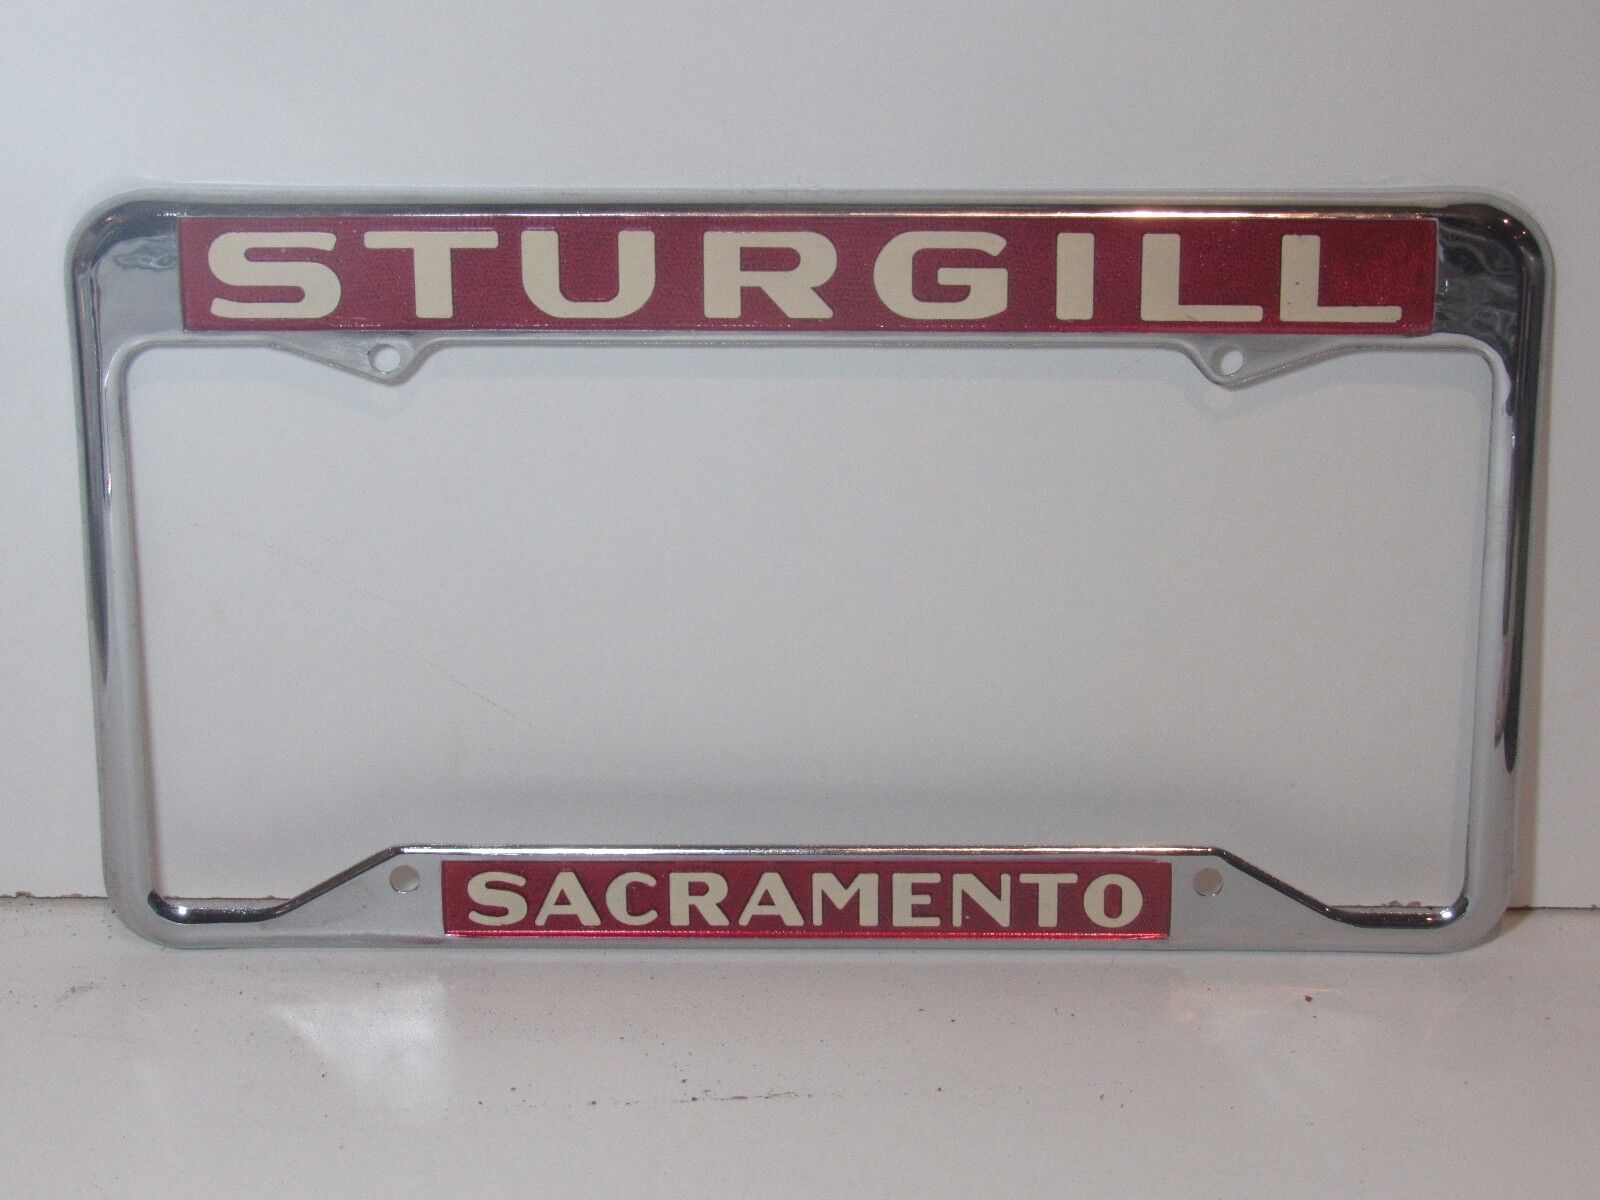 NOS Sturgill Chrysler Dodge Jeep License Plate Frame Metal Holder Tag Sac Ca